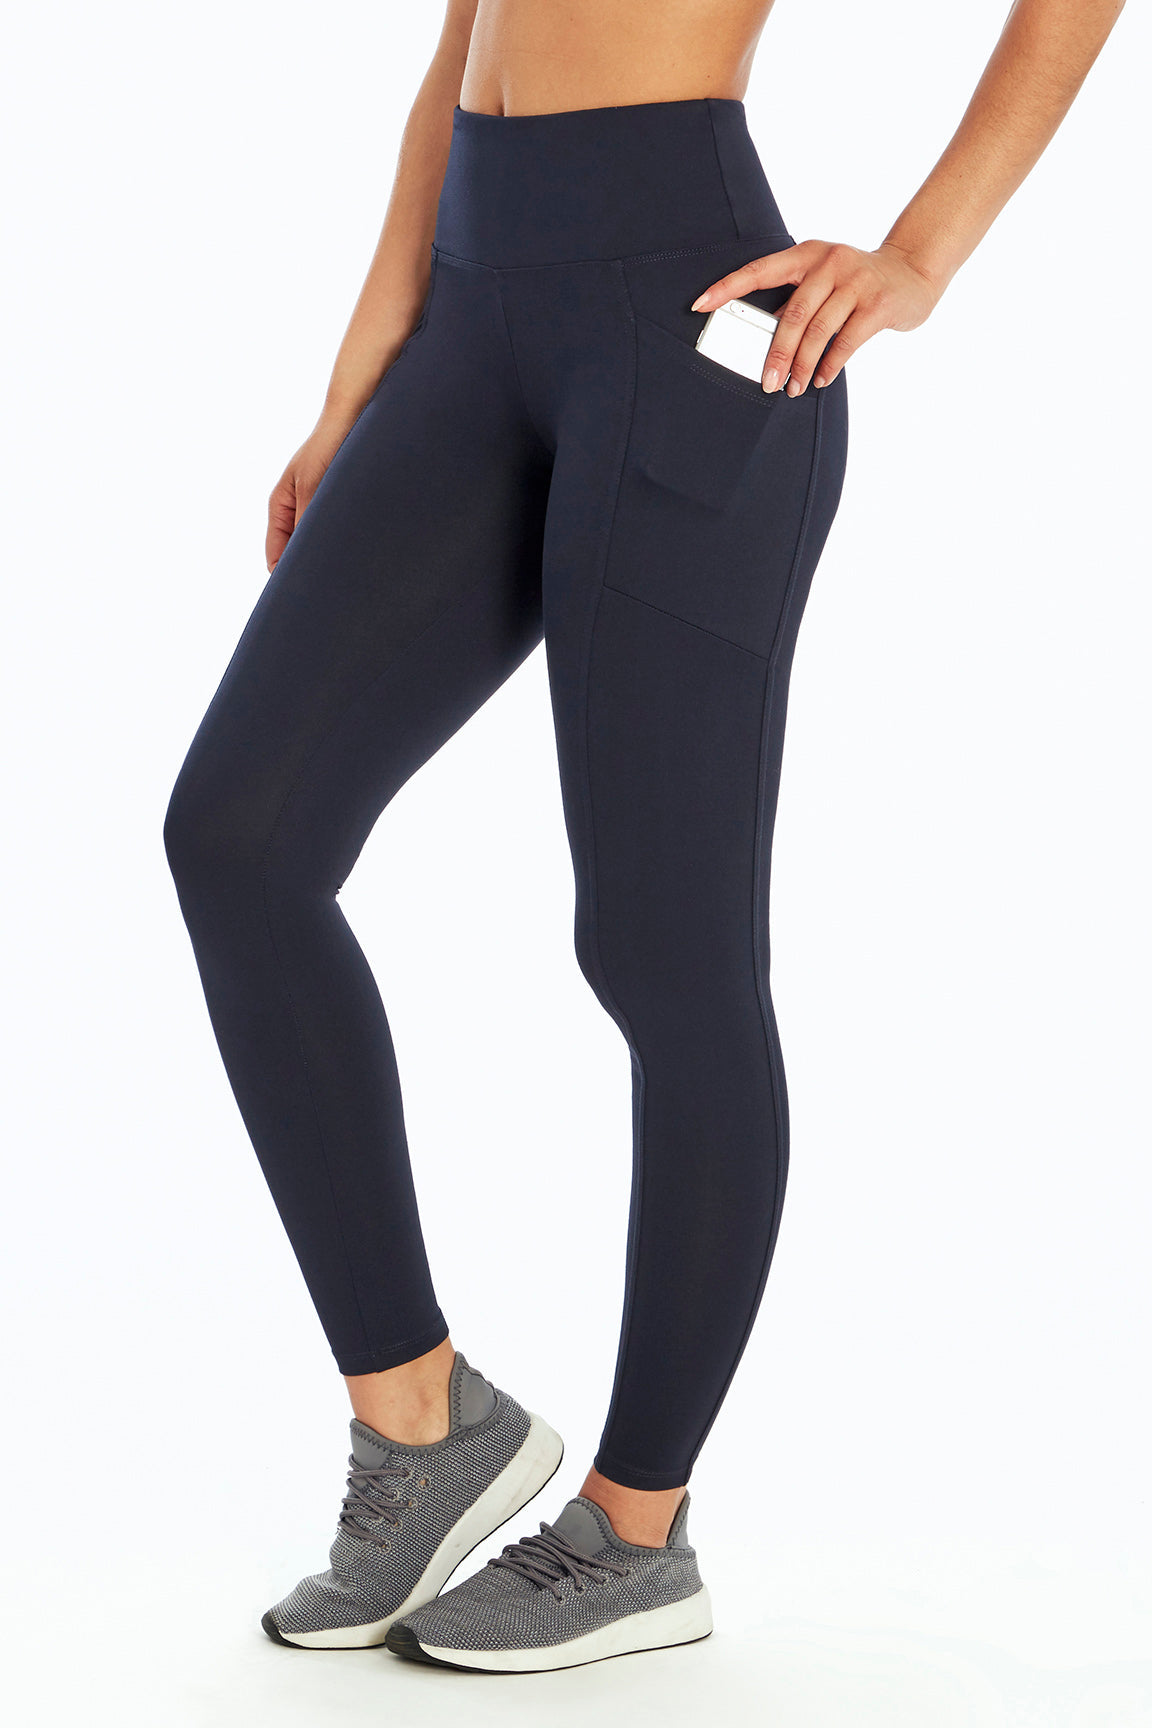 Marika Yoga Pants with key pocket Size XL